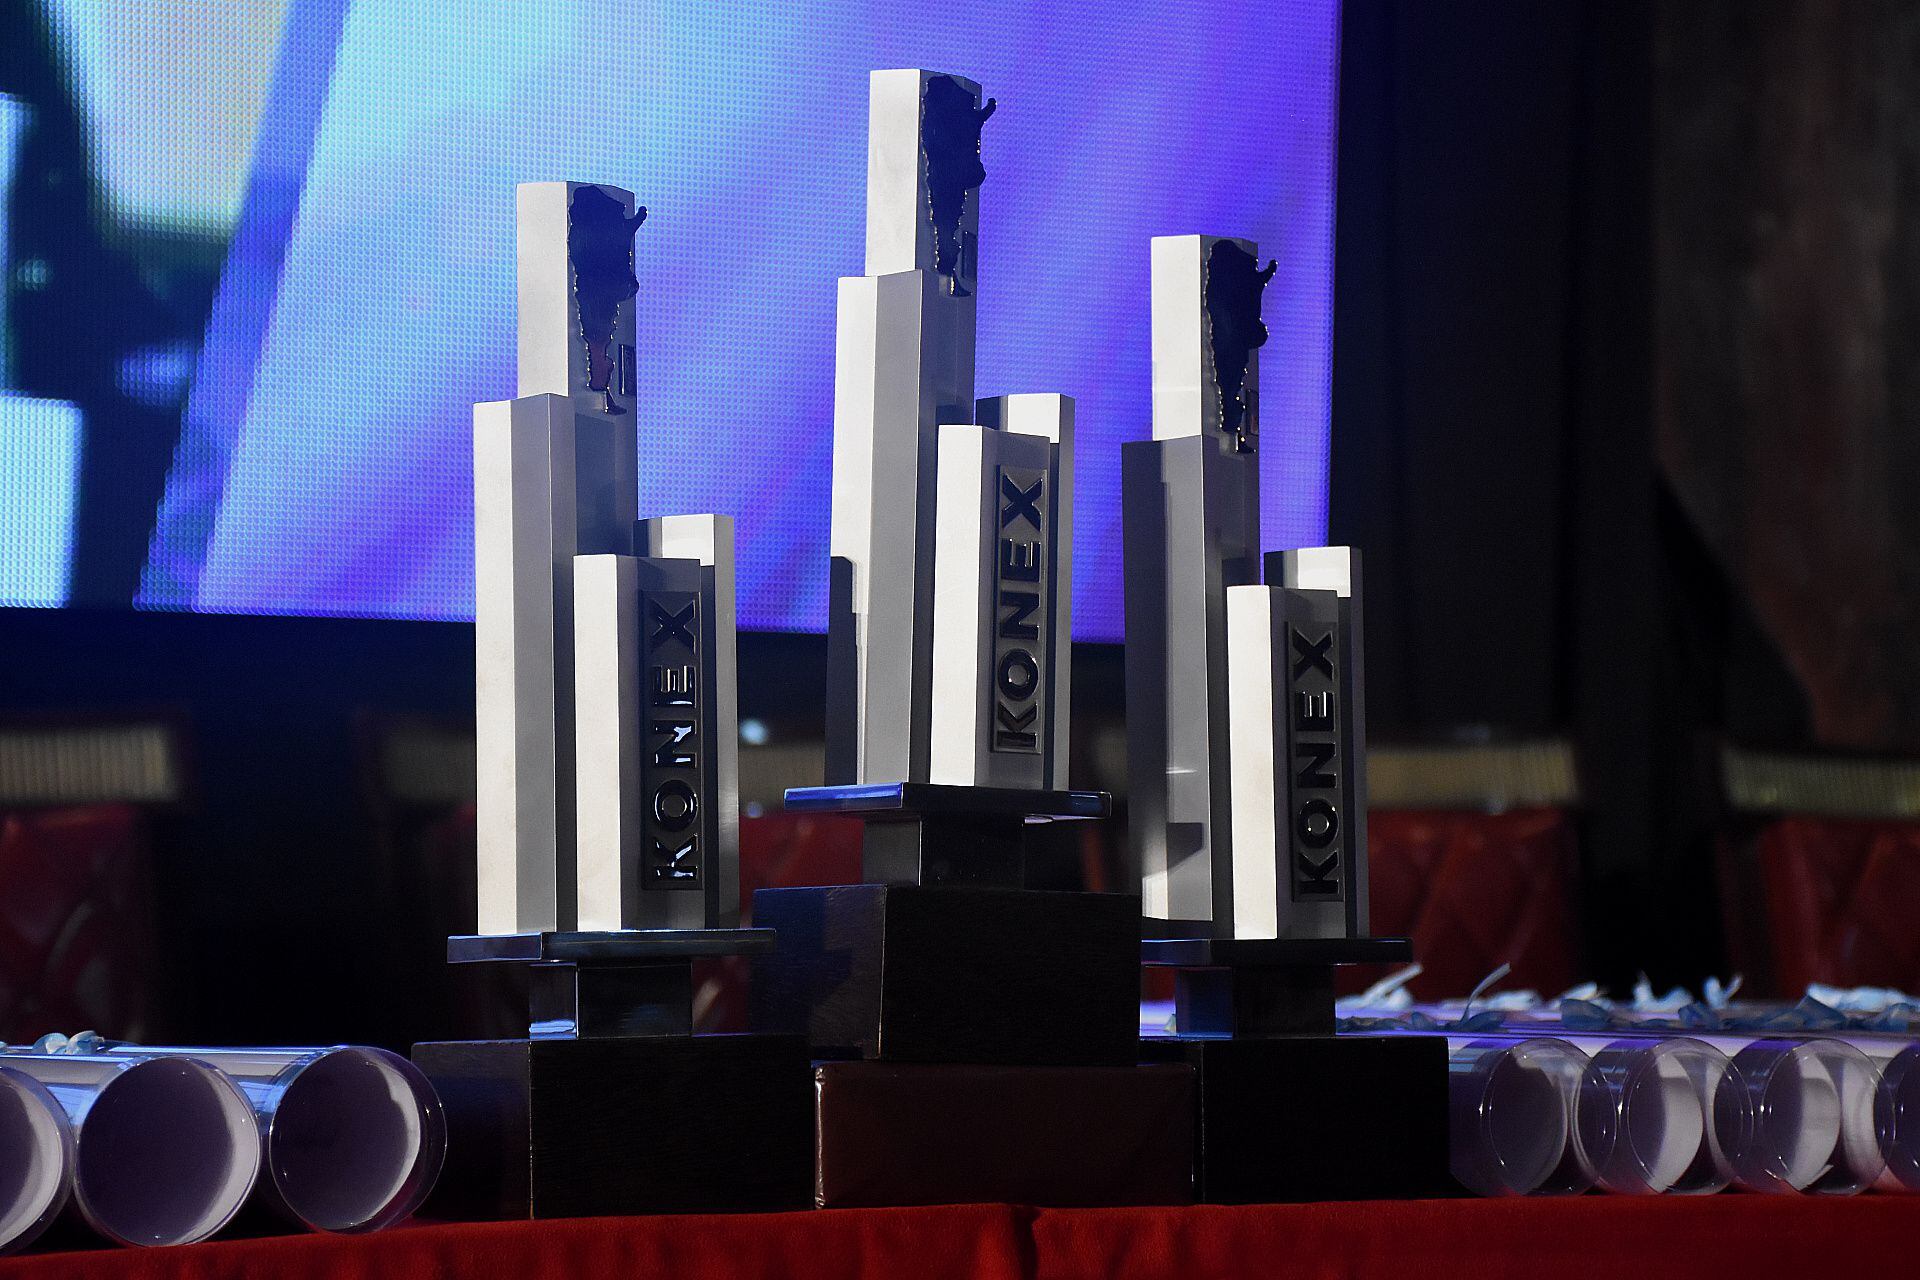 La premiación reciente de los Konex fue a las personalidades más destacadas de la última década en el ámbito de la ciencia y la tecnología
(Nicolas Stulberg)